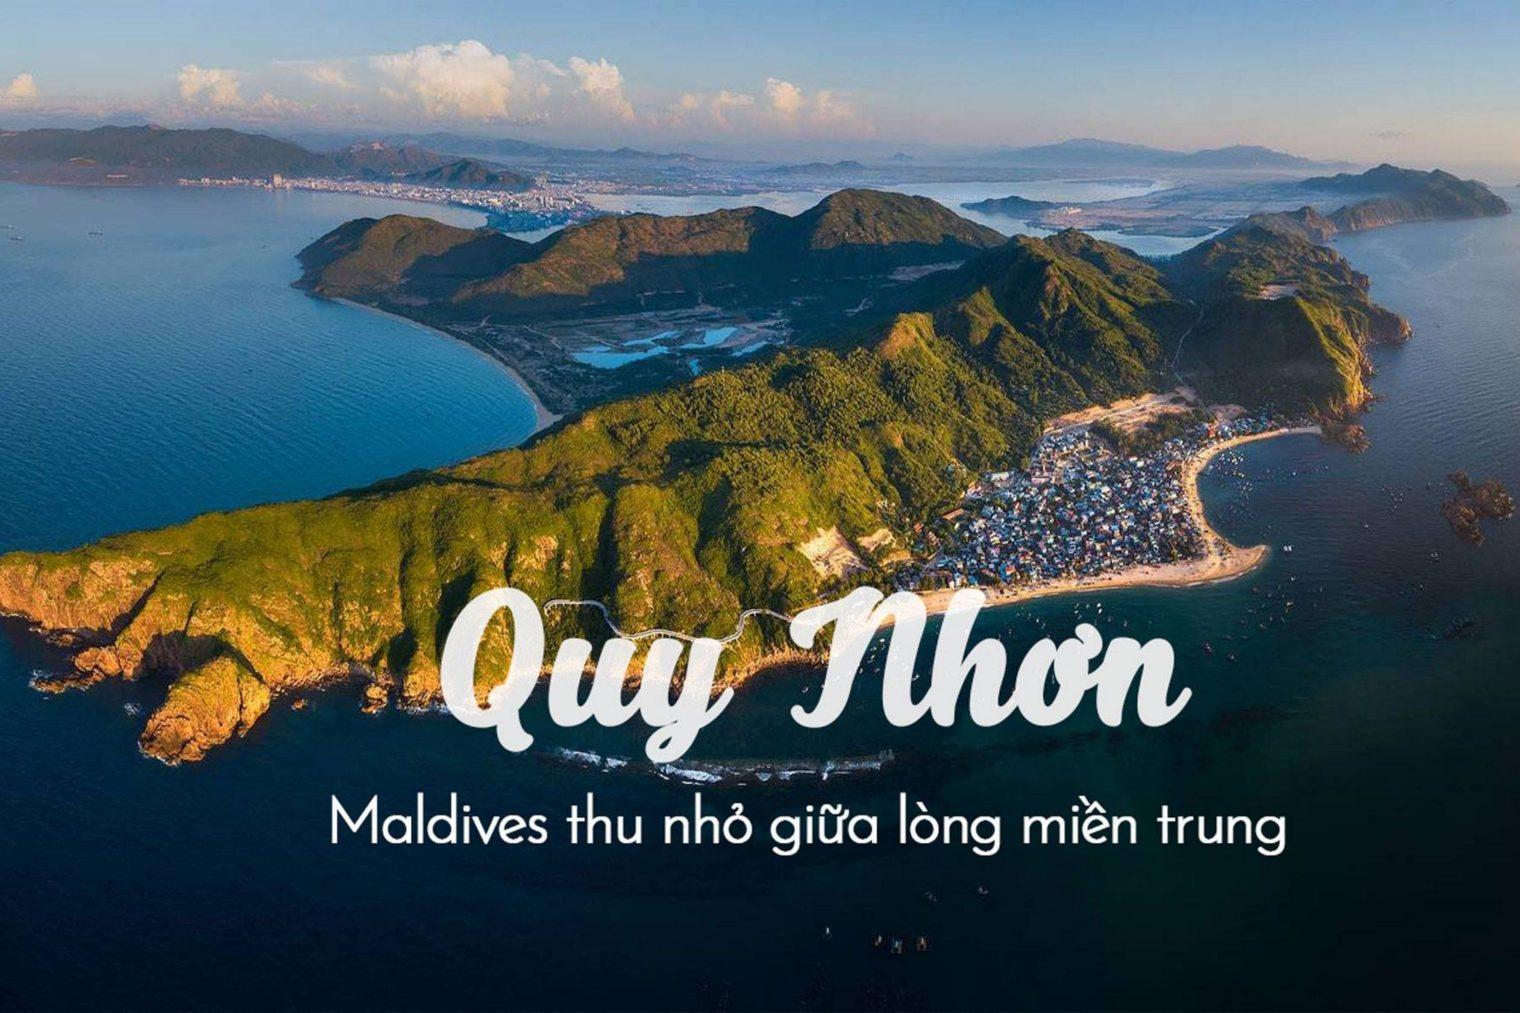 You are currently viewing Lợi thế giúp bất động sản nghỉ dưỡng tại Quy Nhơn tiếp tục cất cánh